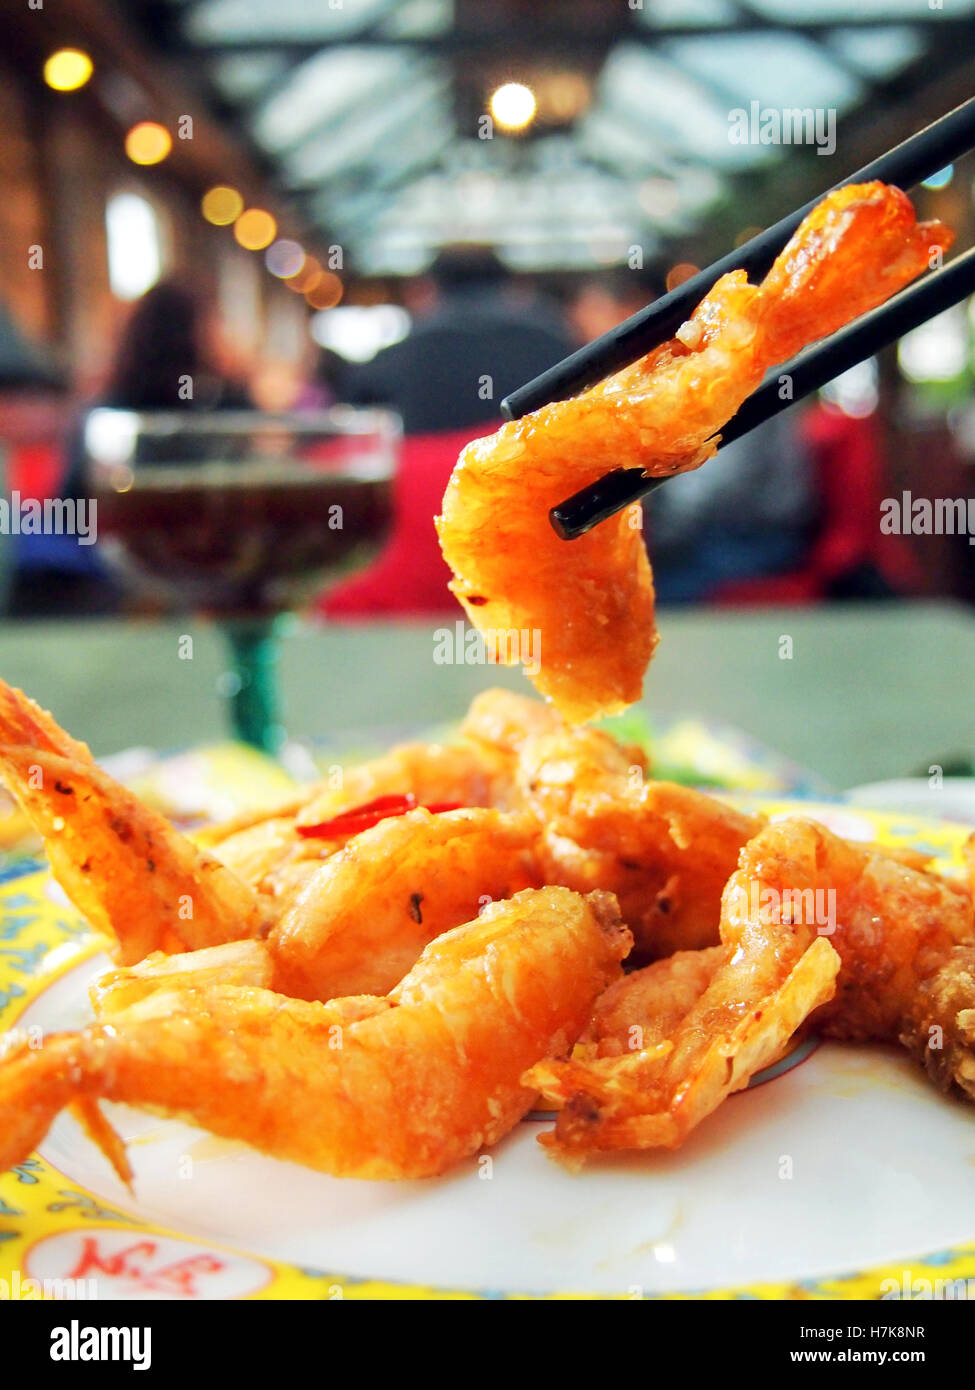 Crevettes frites, une cuisine chinoise Banque D'Images